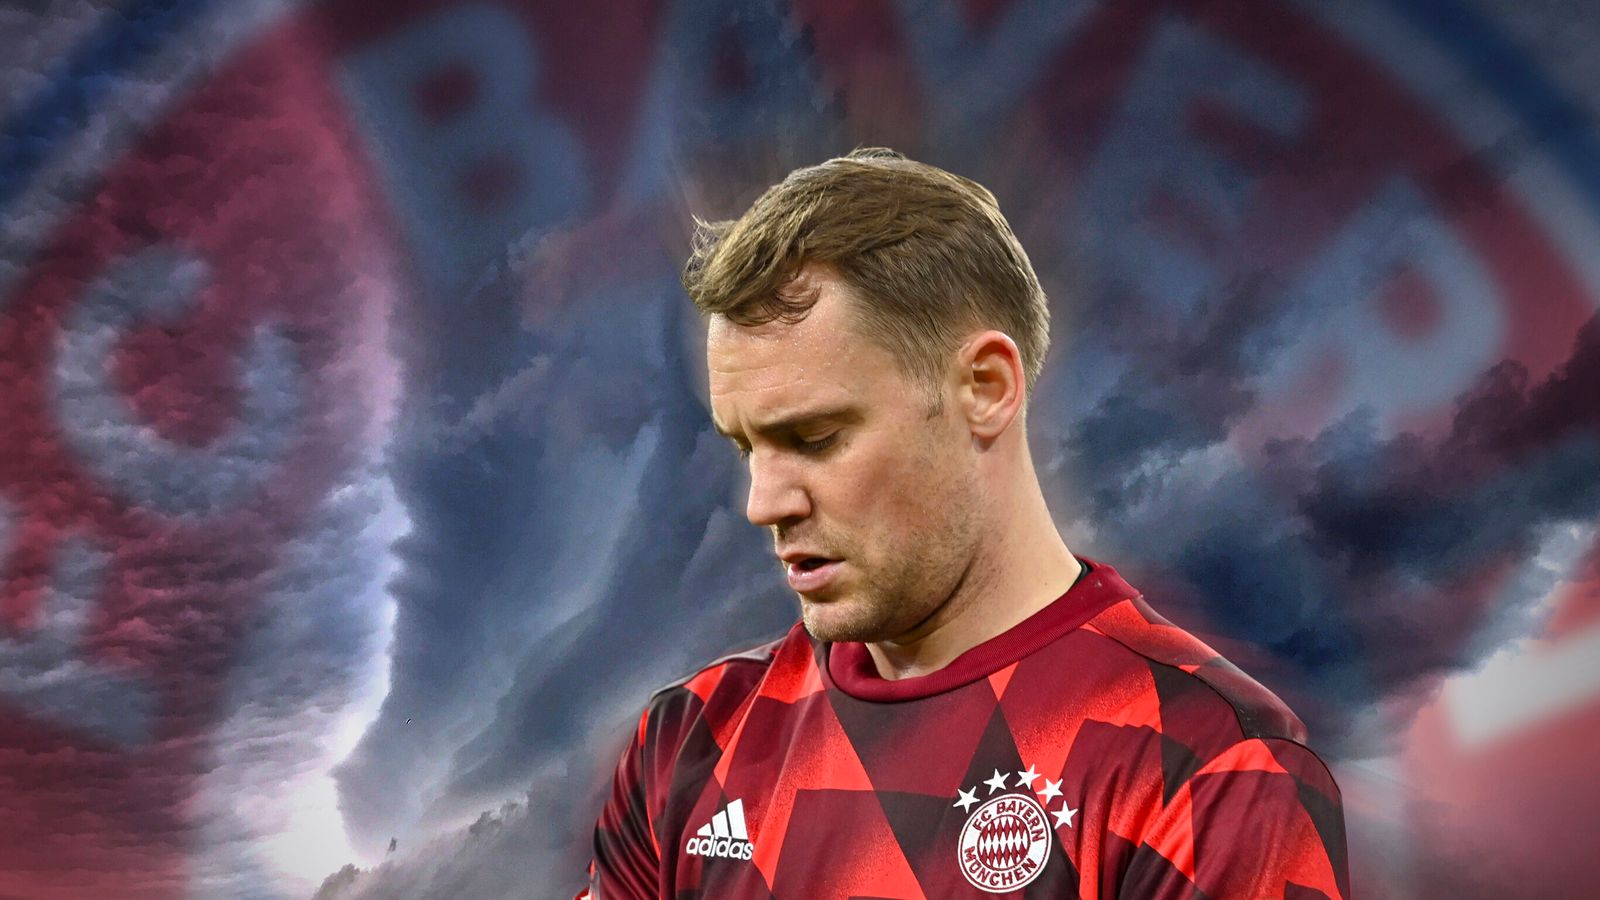 Manuel Neuer trở lại: Huyền thoại Bayern trở lại sau chấn thương nhưng huyền thoại phải chứng minh anh vẫn là thủ môn xuất sắc nhất nước Đức | Tin tức bóng đá | Thể thao trên không